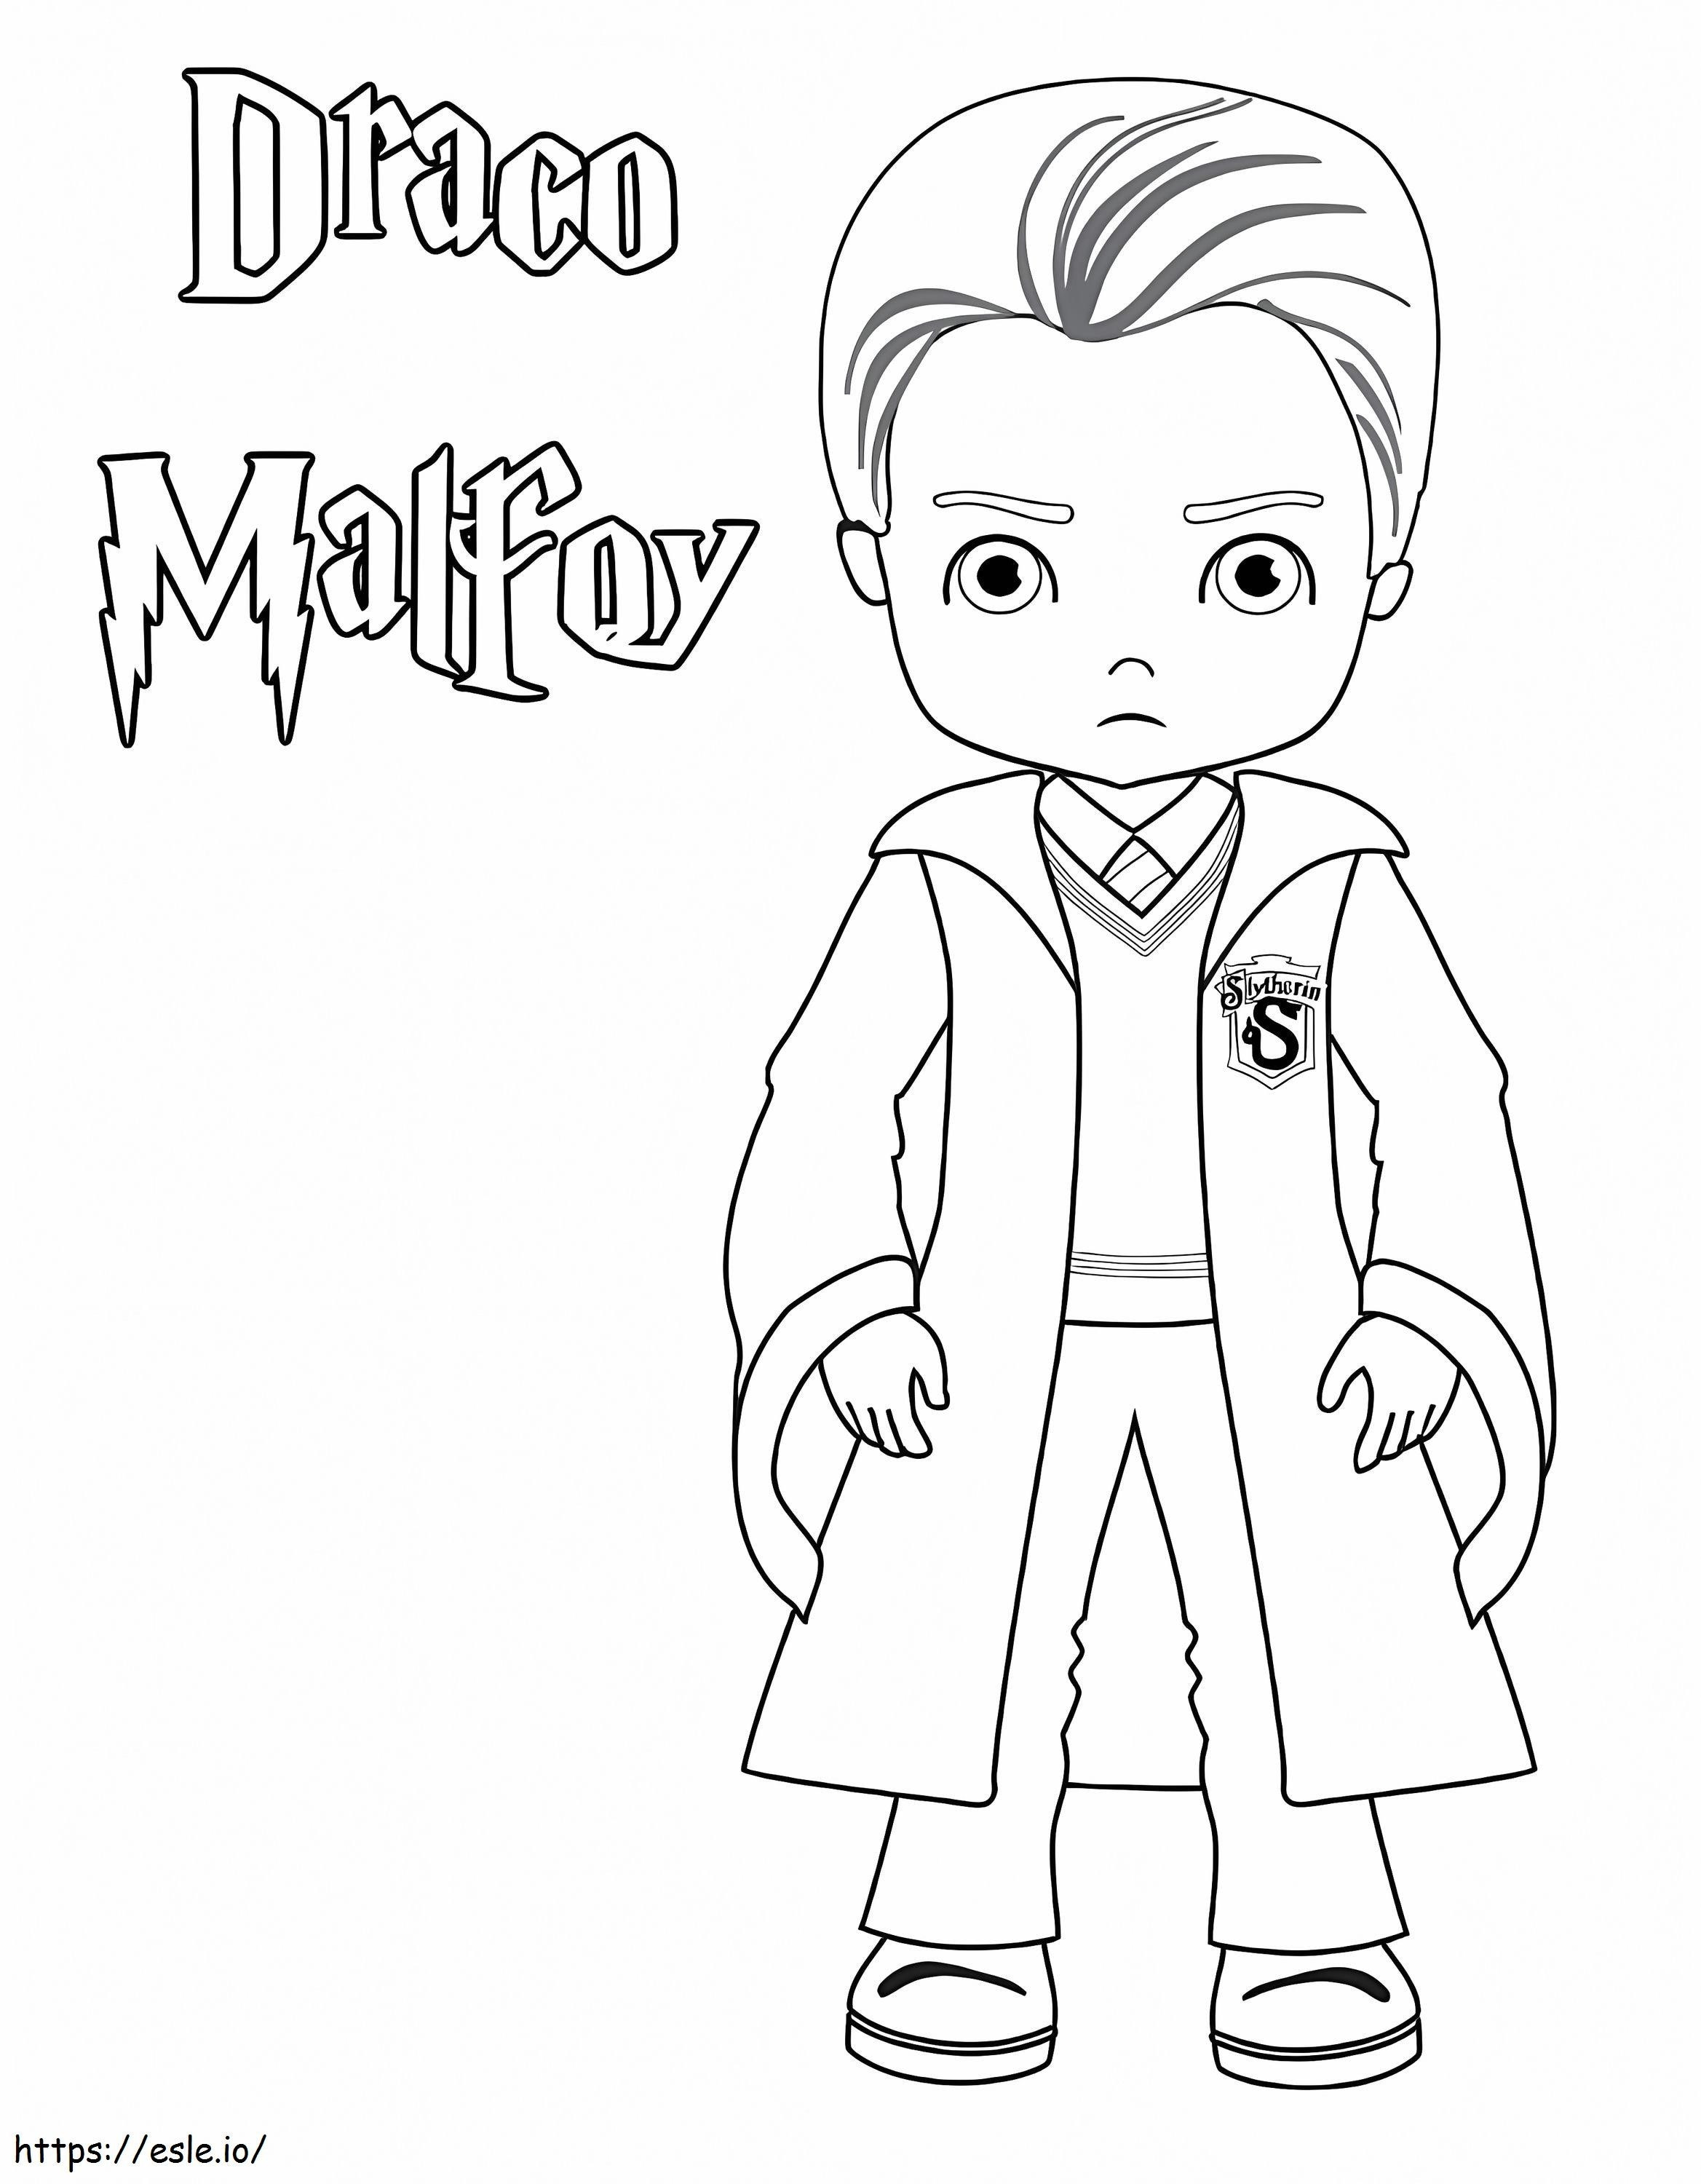 Draco Malfoy ausmalbilder